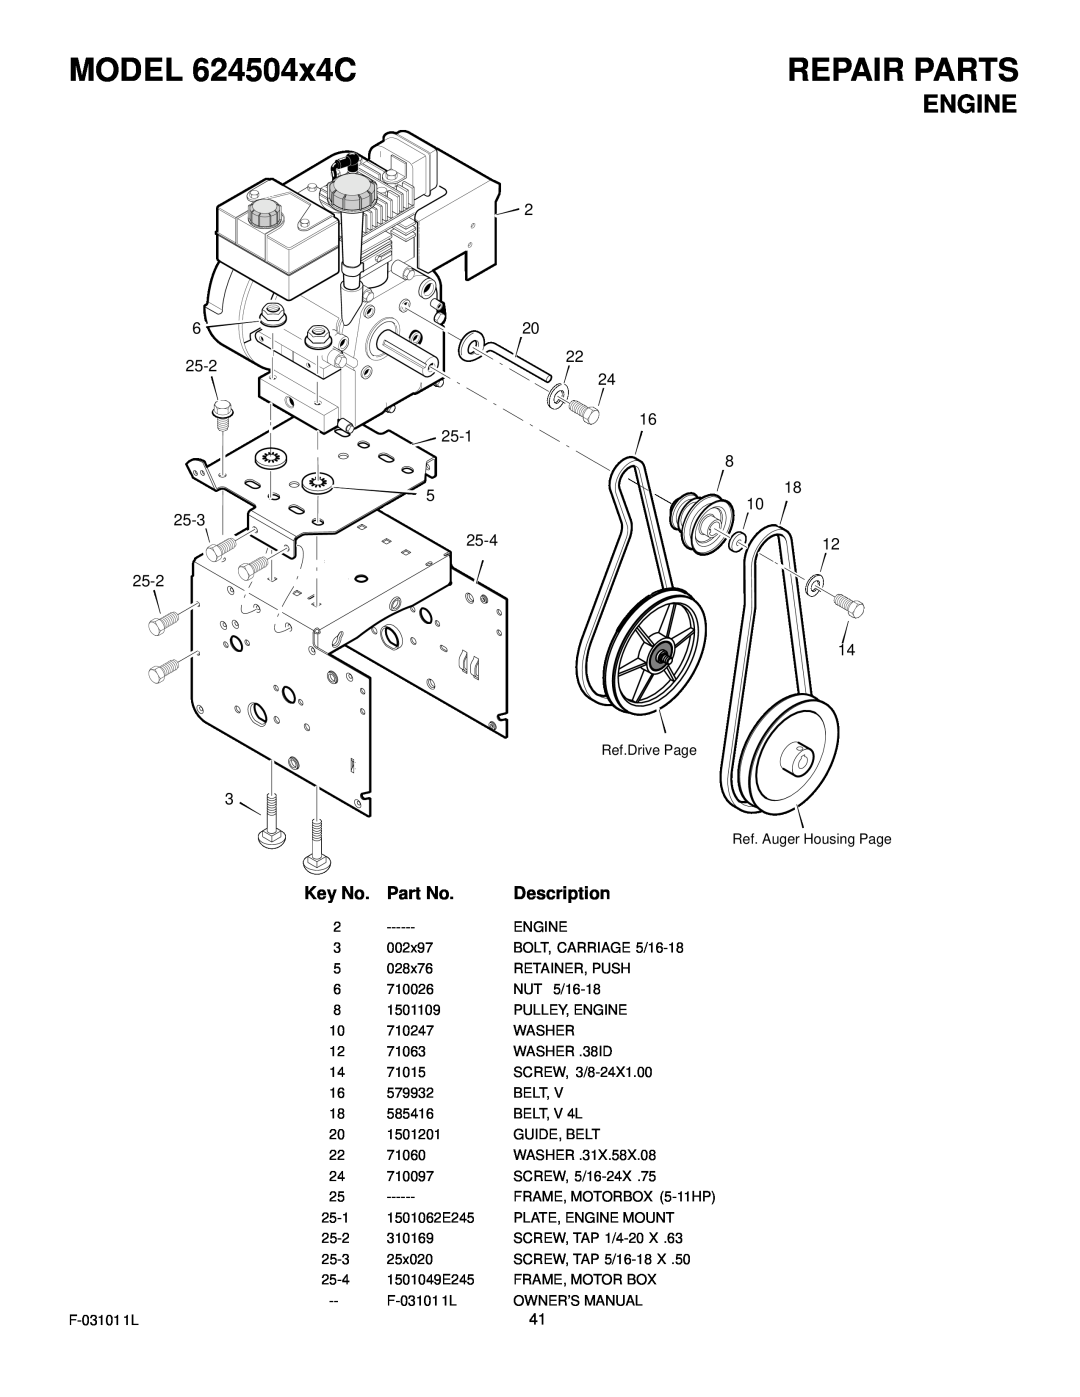 Murray manual MODEL 624504x4C, Repair Parts, Description 